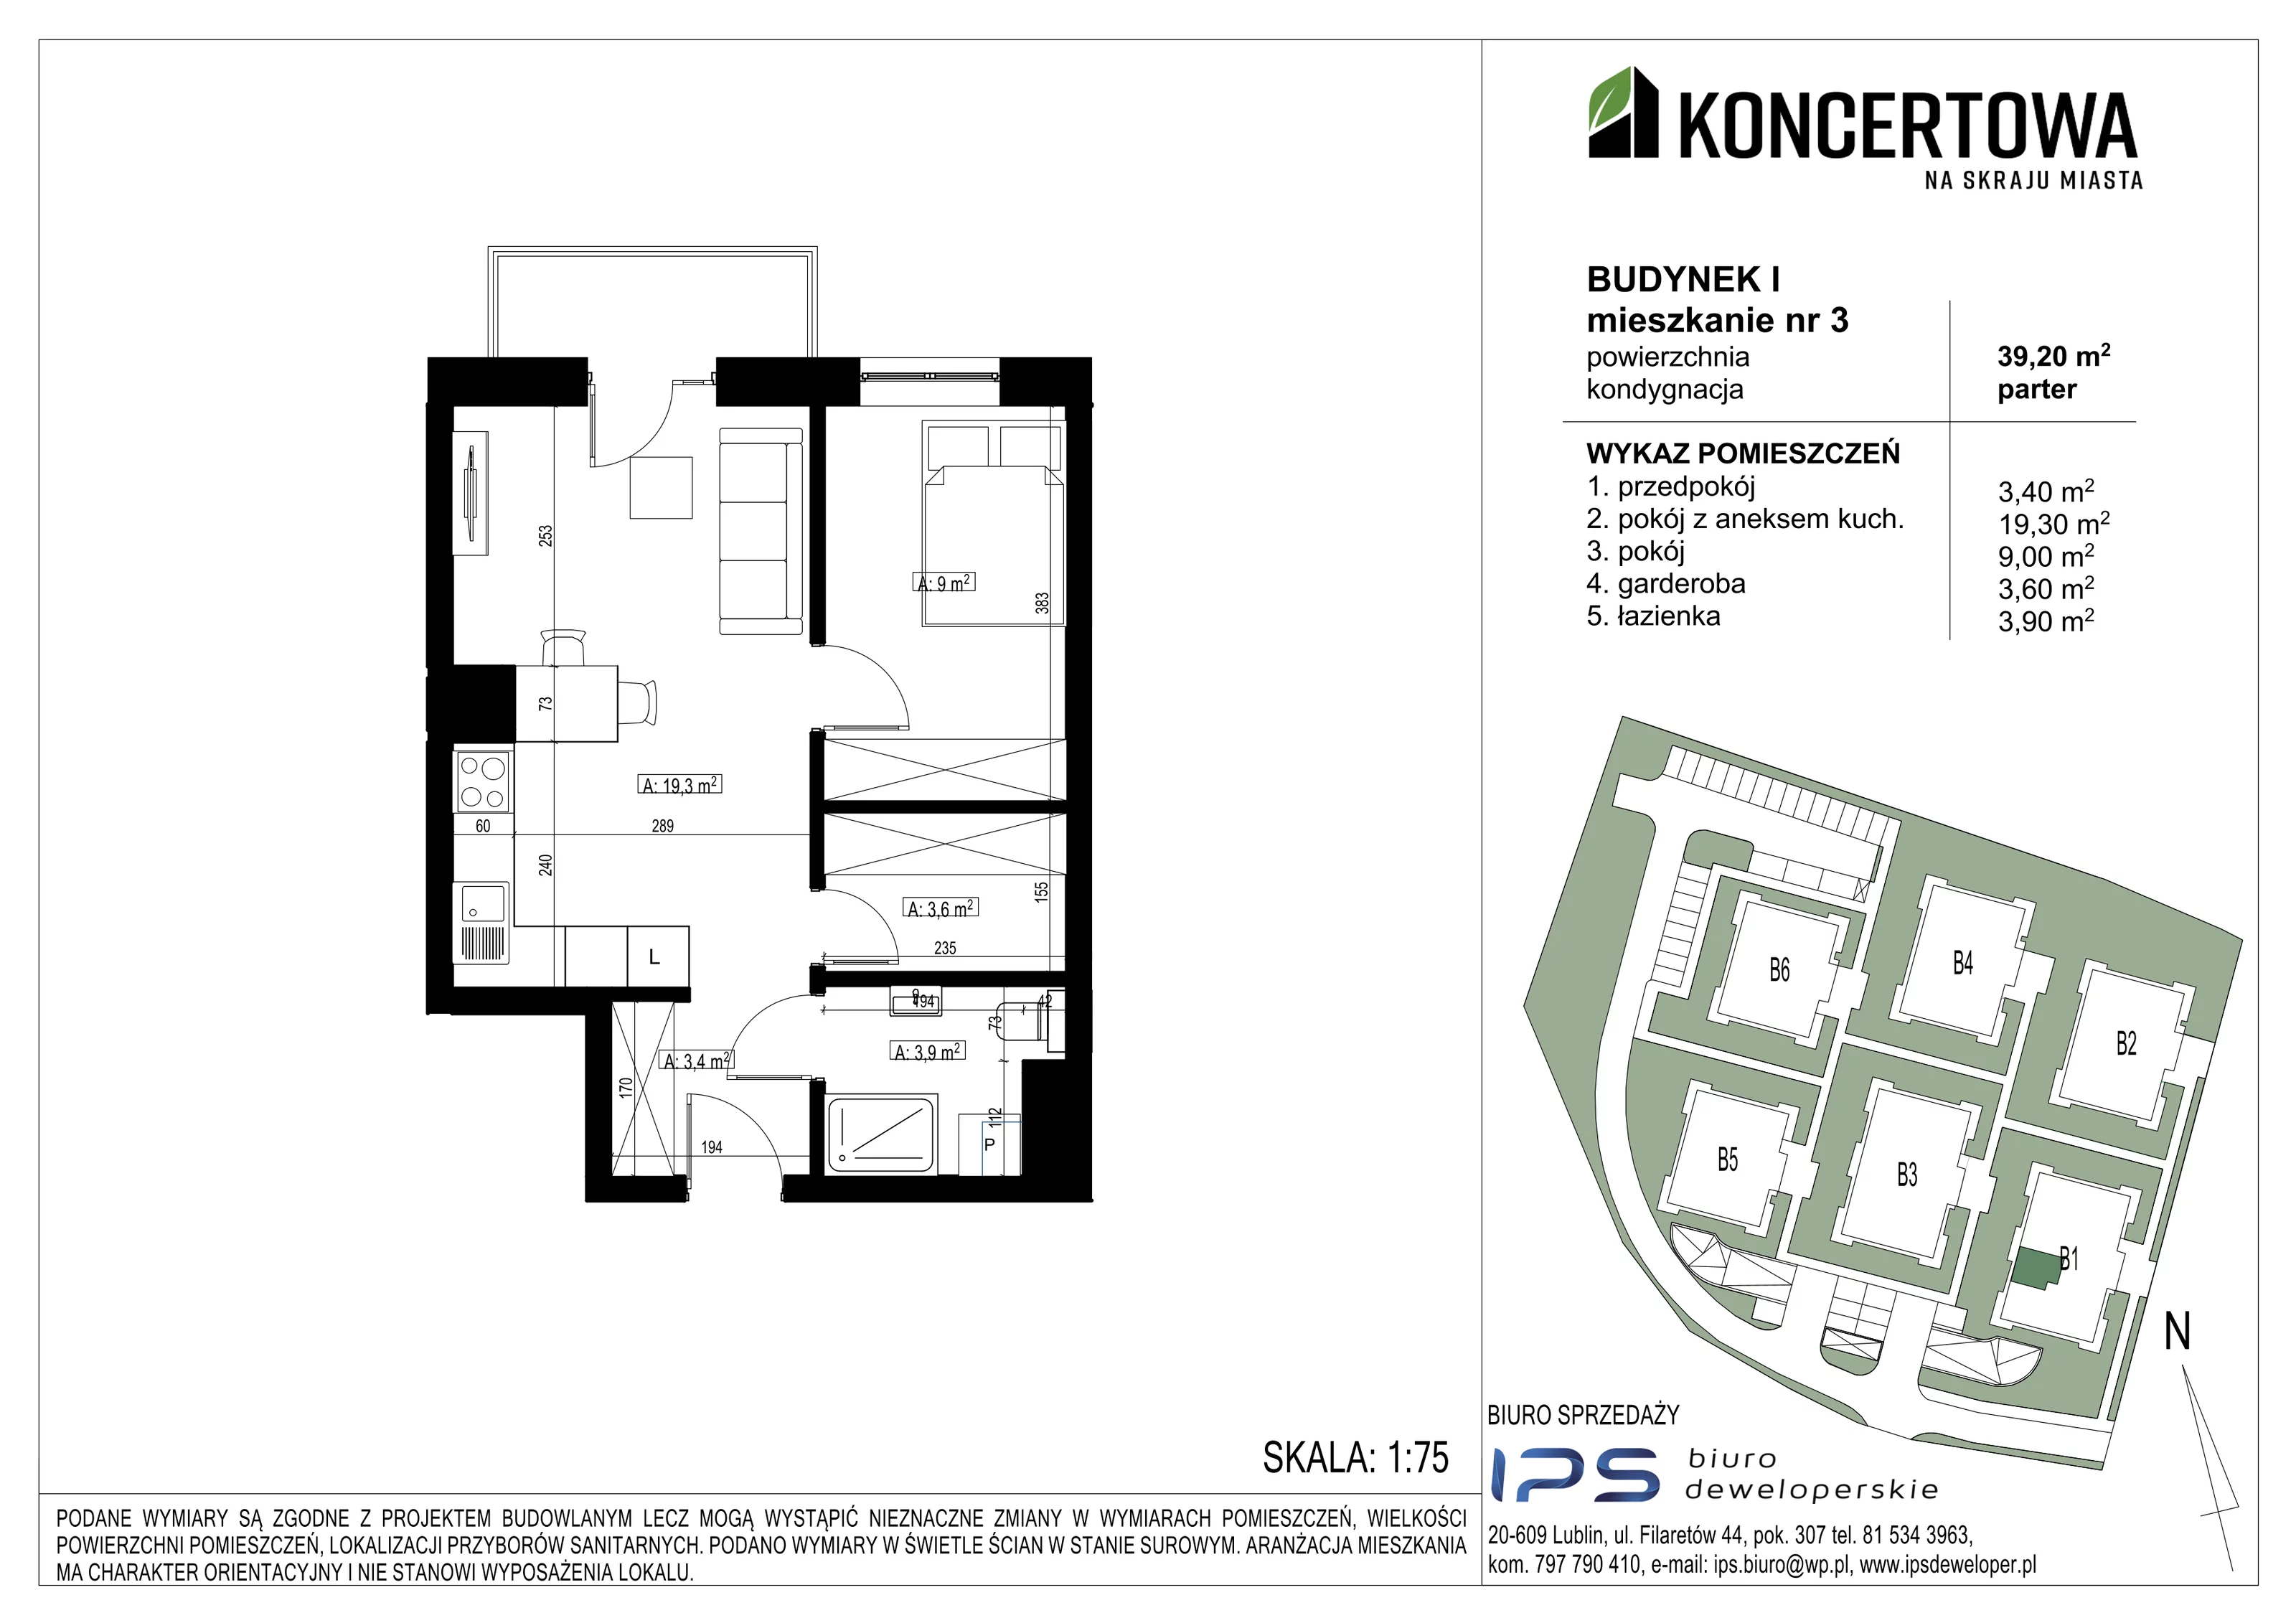 Mieszkanie 39,20 m², parter, oferta nr 2_I/3, KONCERTOWA - Na skraju miasta, Lublin, Czechów Północny, Czechów Północny,  ul. Koncertowa